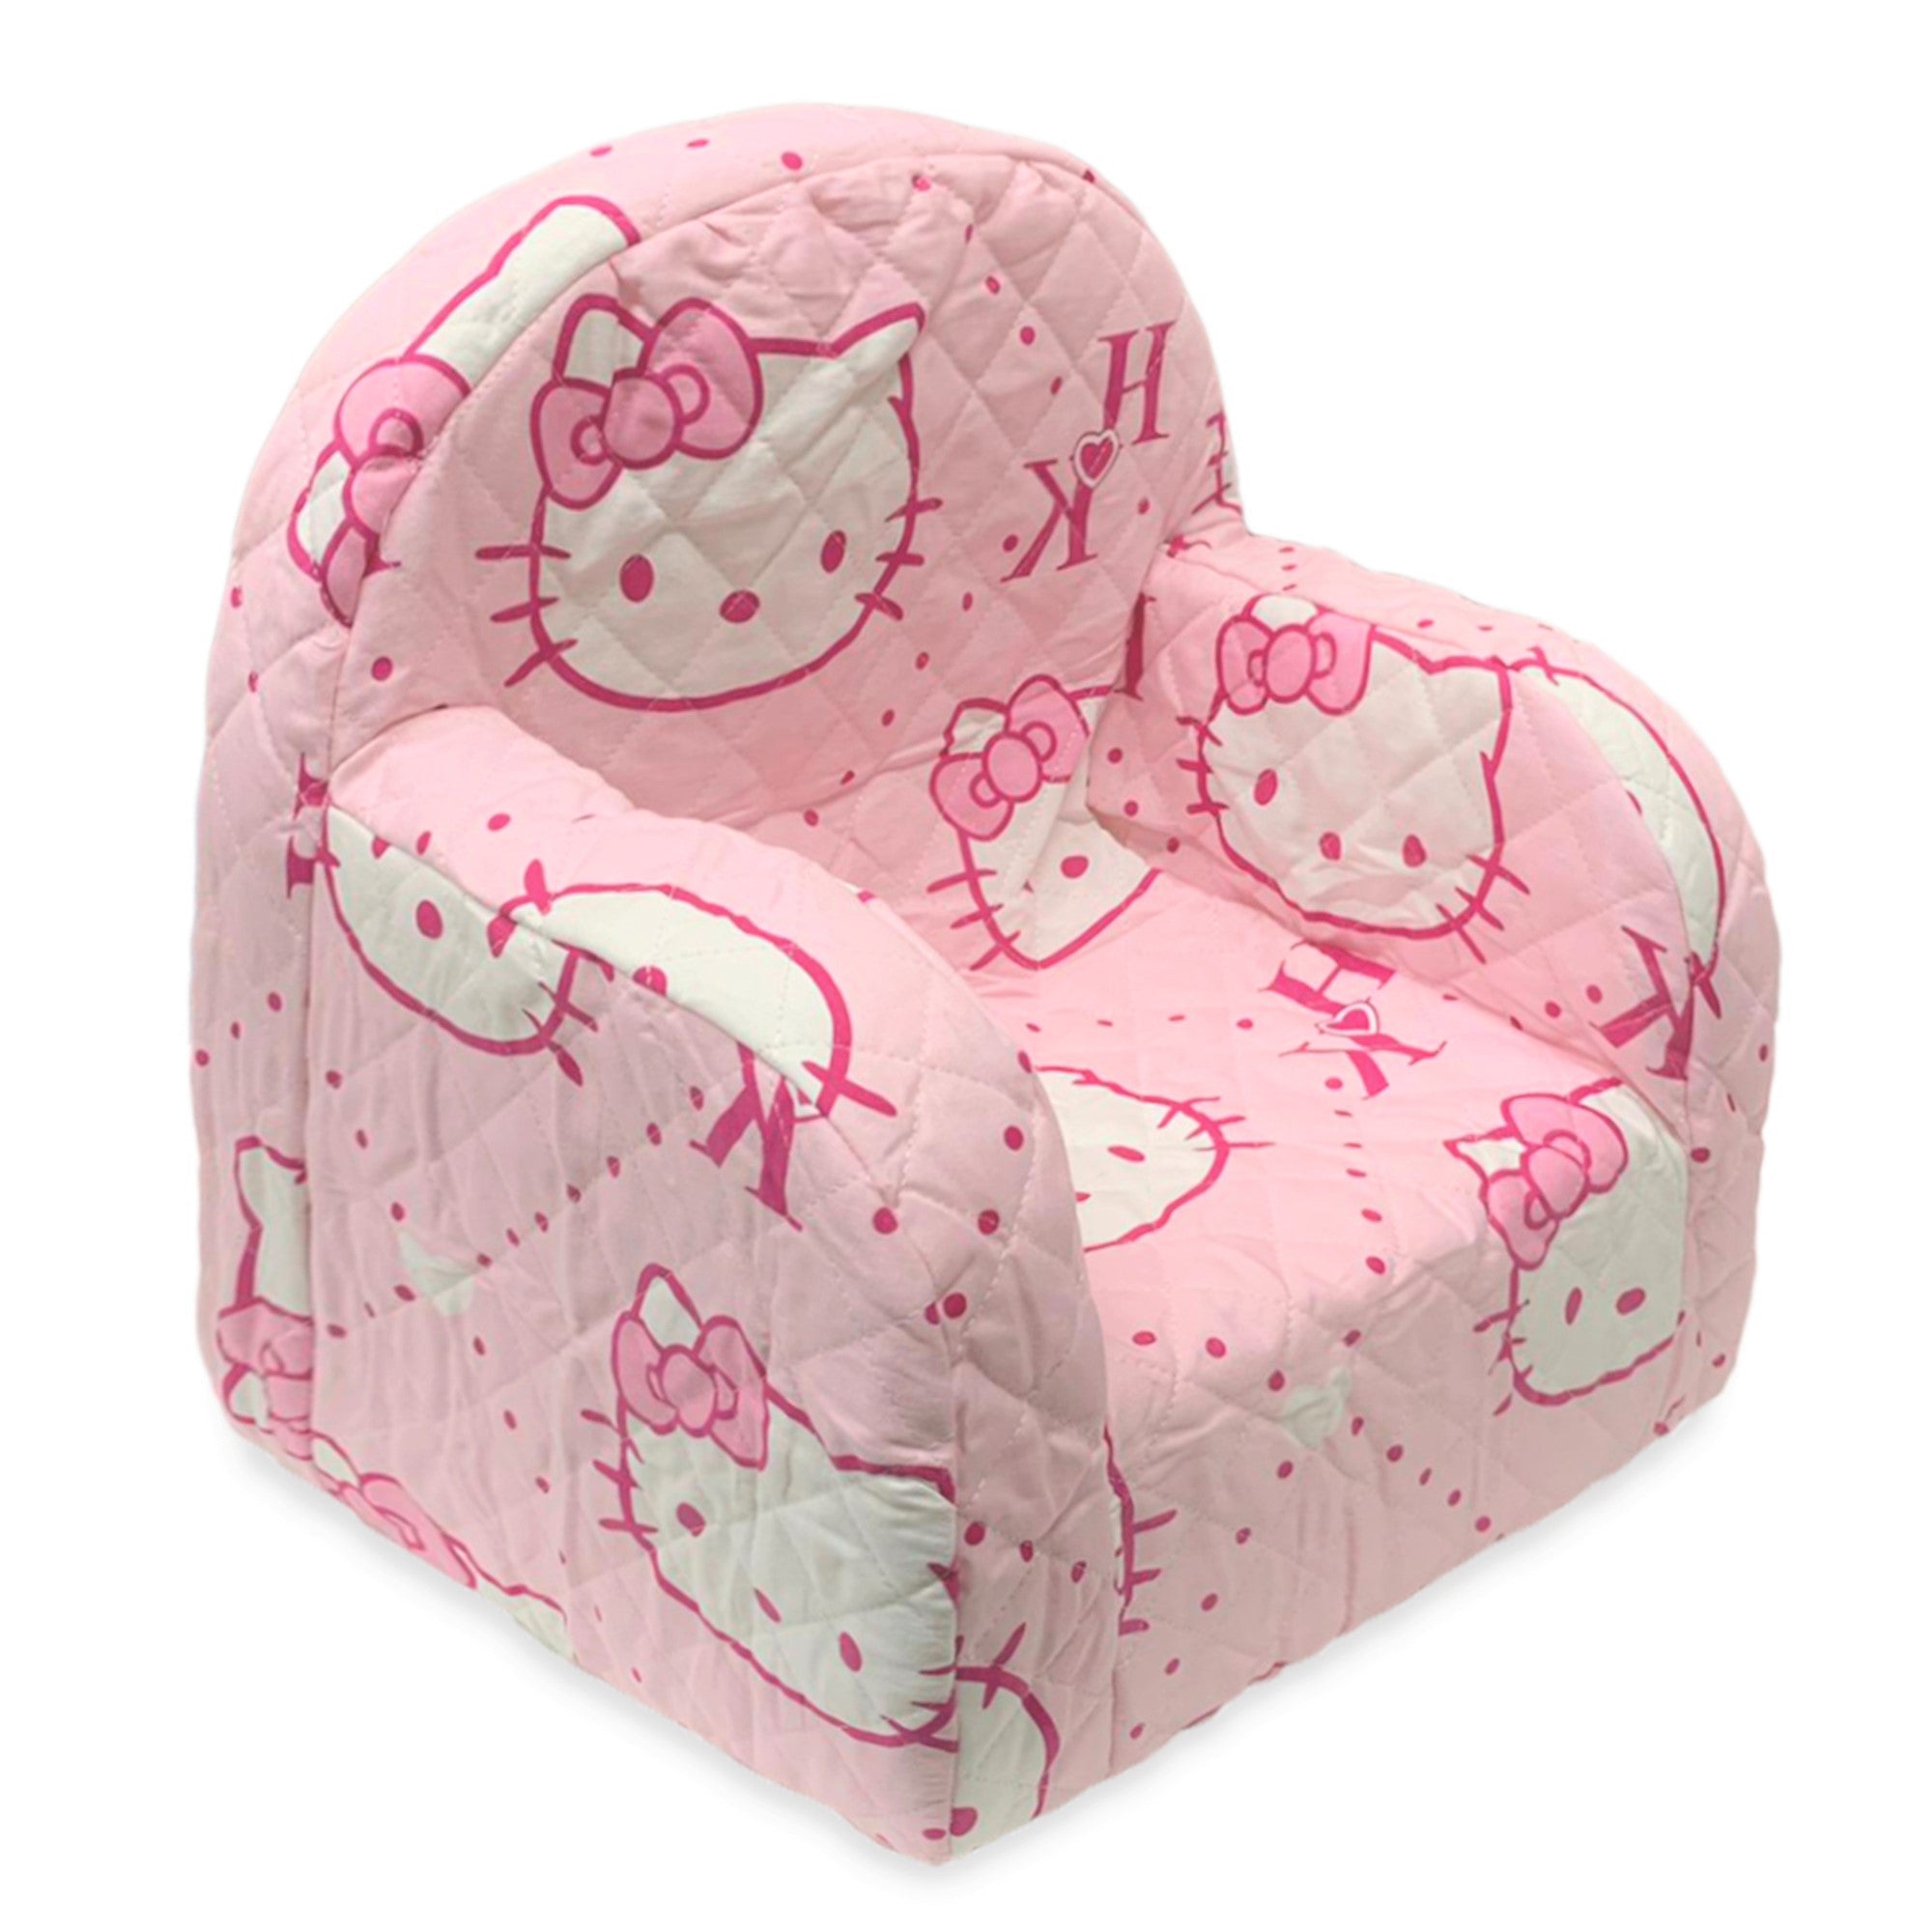 Poltroncina Hello Kitty ufficiale poltrona sedia bimba cameretta 3556